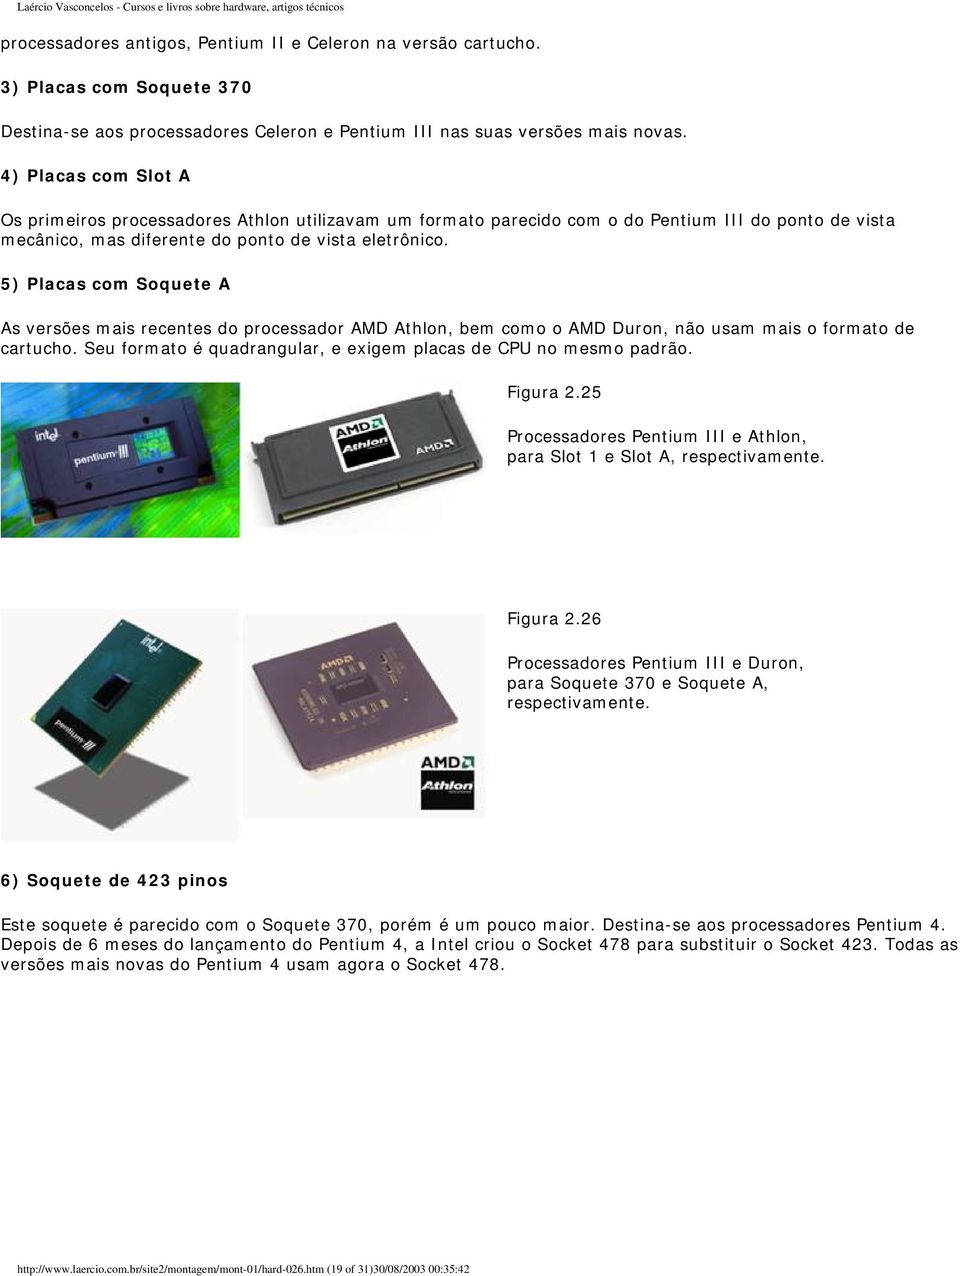 5) Placas com Soquete A As versões mais recentes do processador AMD Athlon, bem como o AMD Duron, não usam mais o formato de cartucho.